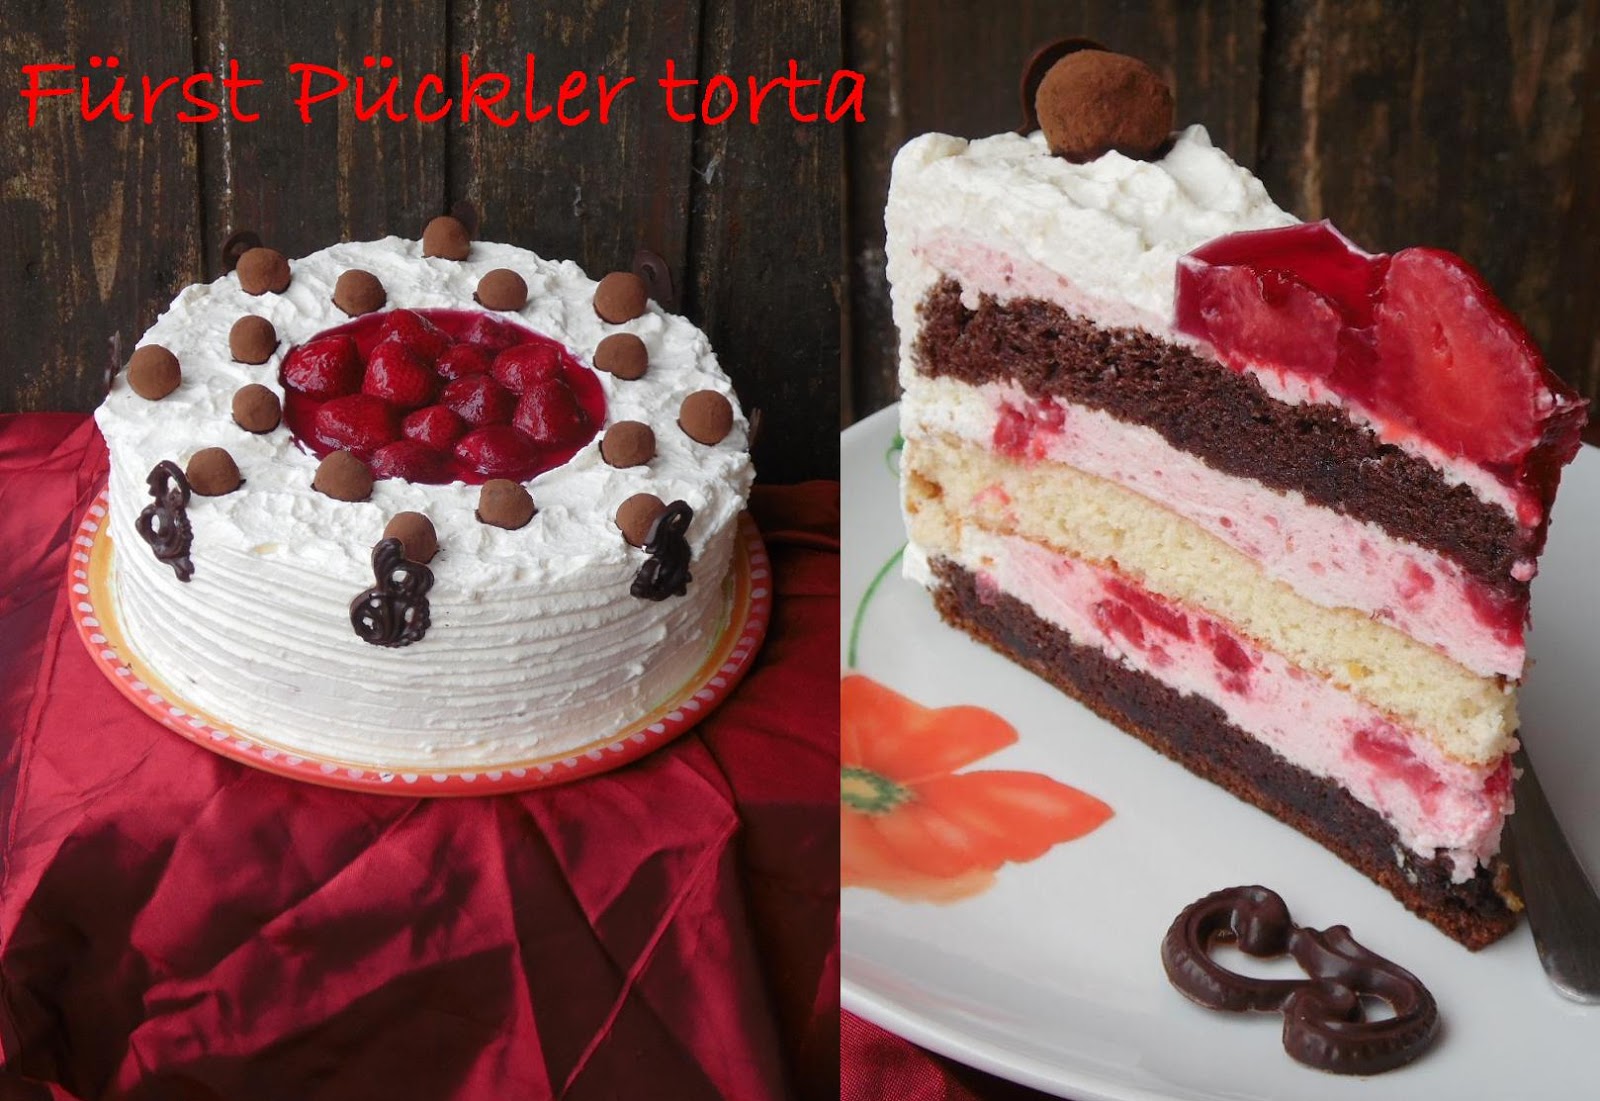 teller-cake: Fürst Pückler torta